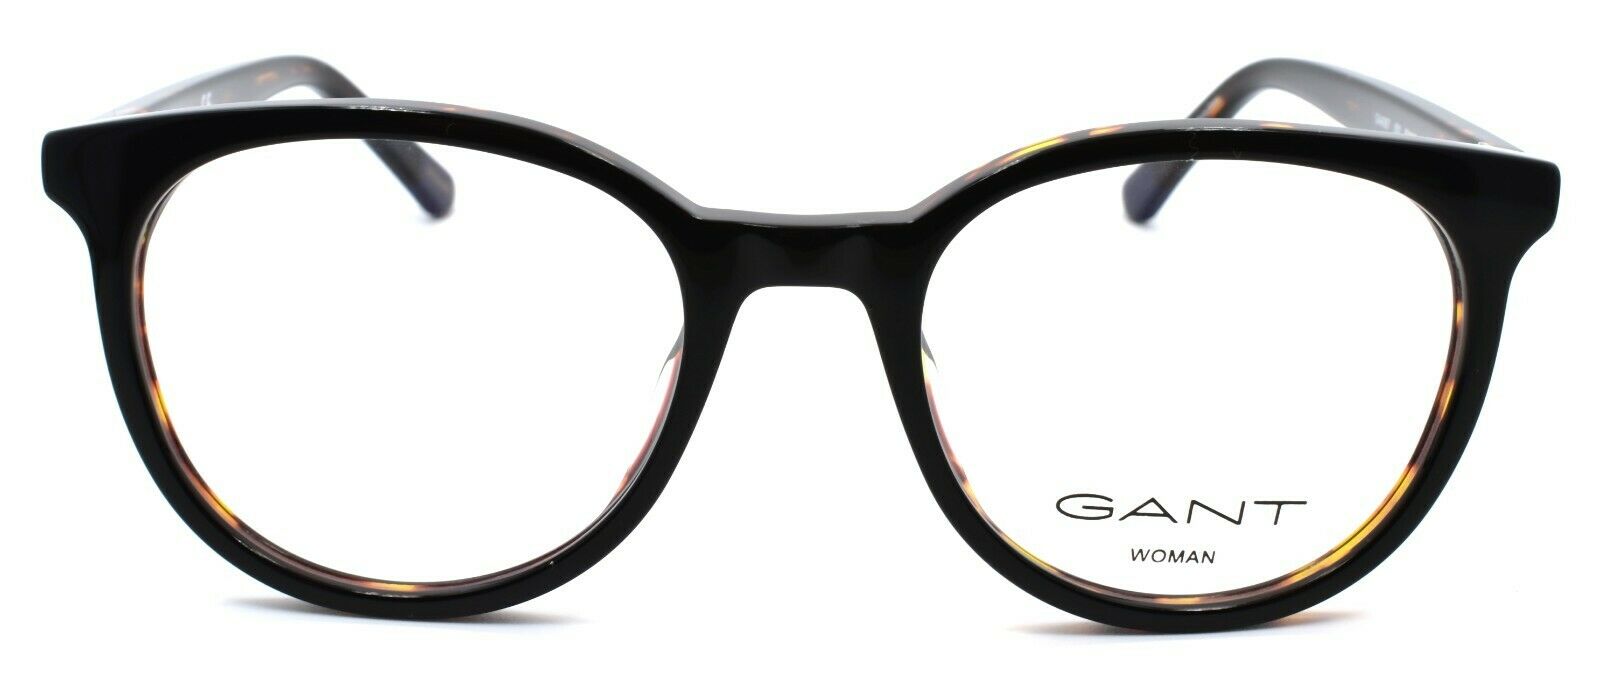 2-GANT GA4087 001 Women's Eyeglasses Frames 50-19-140 Black-889214020611-IKSpecs